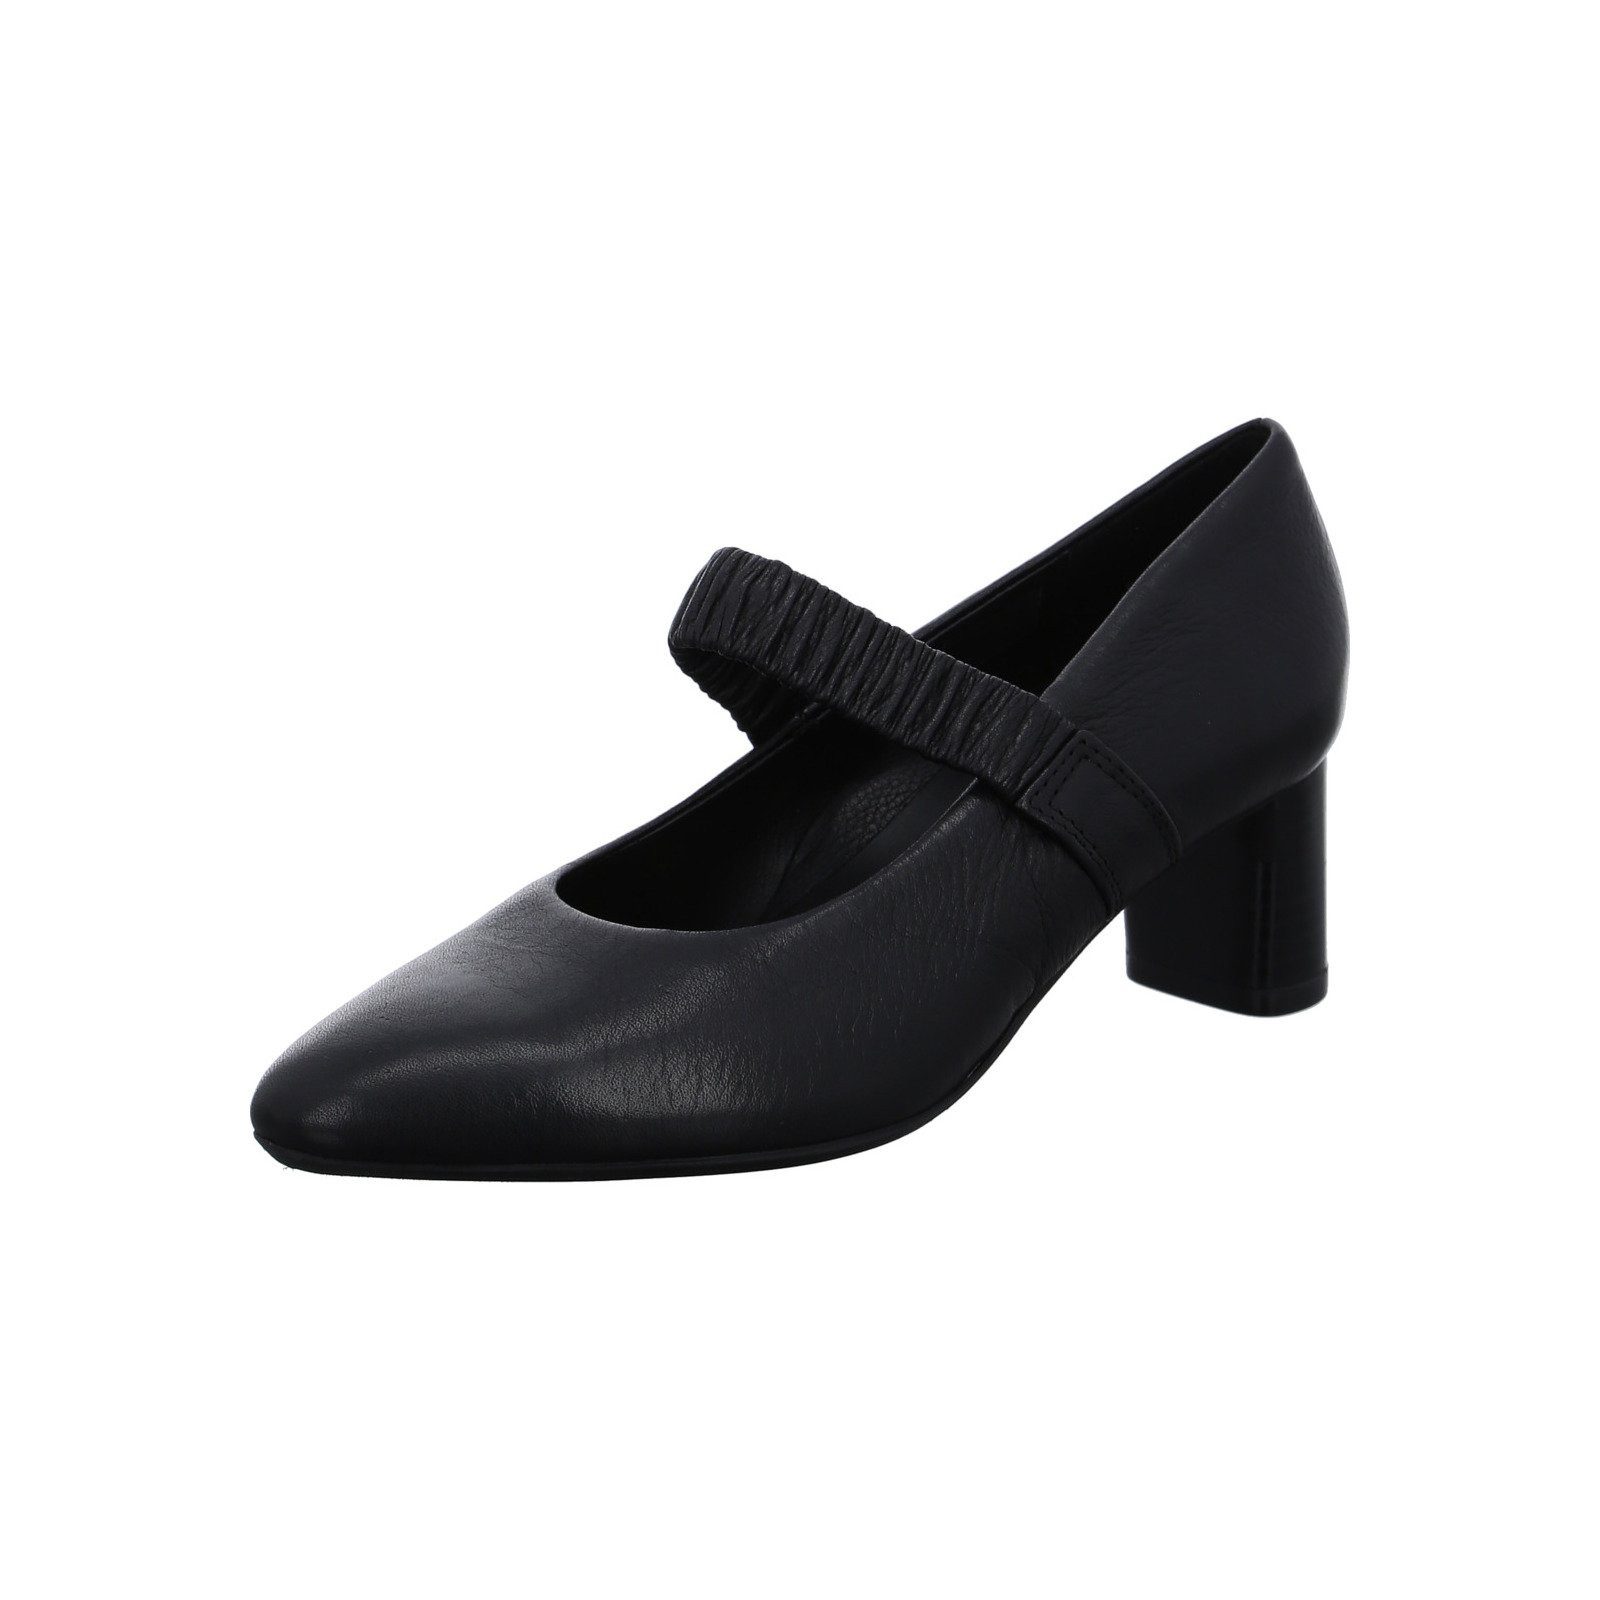 Ara London - Damen Schuhe Pumps Glattleder schwarz